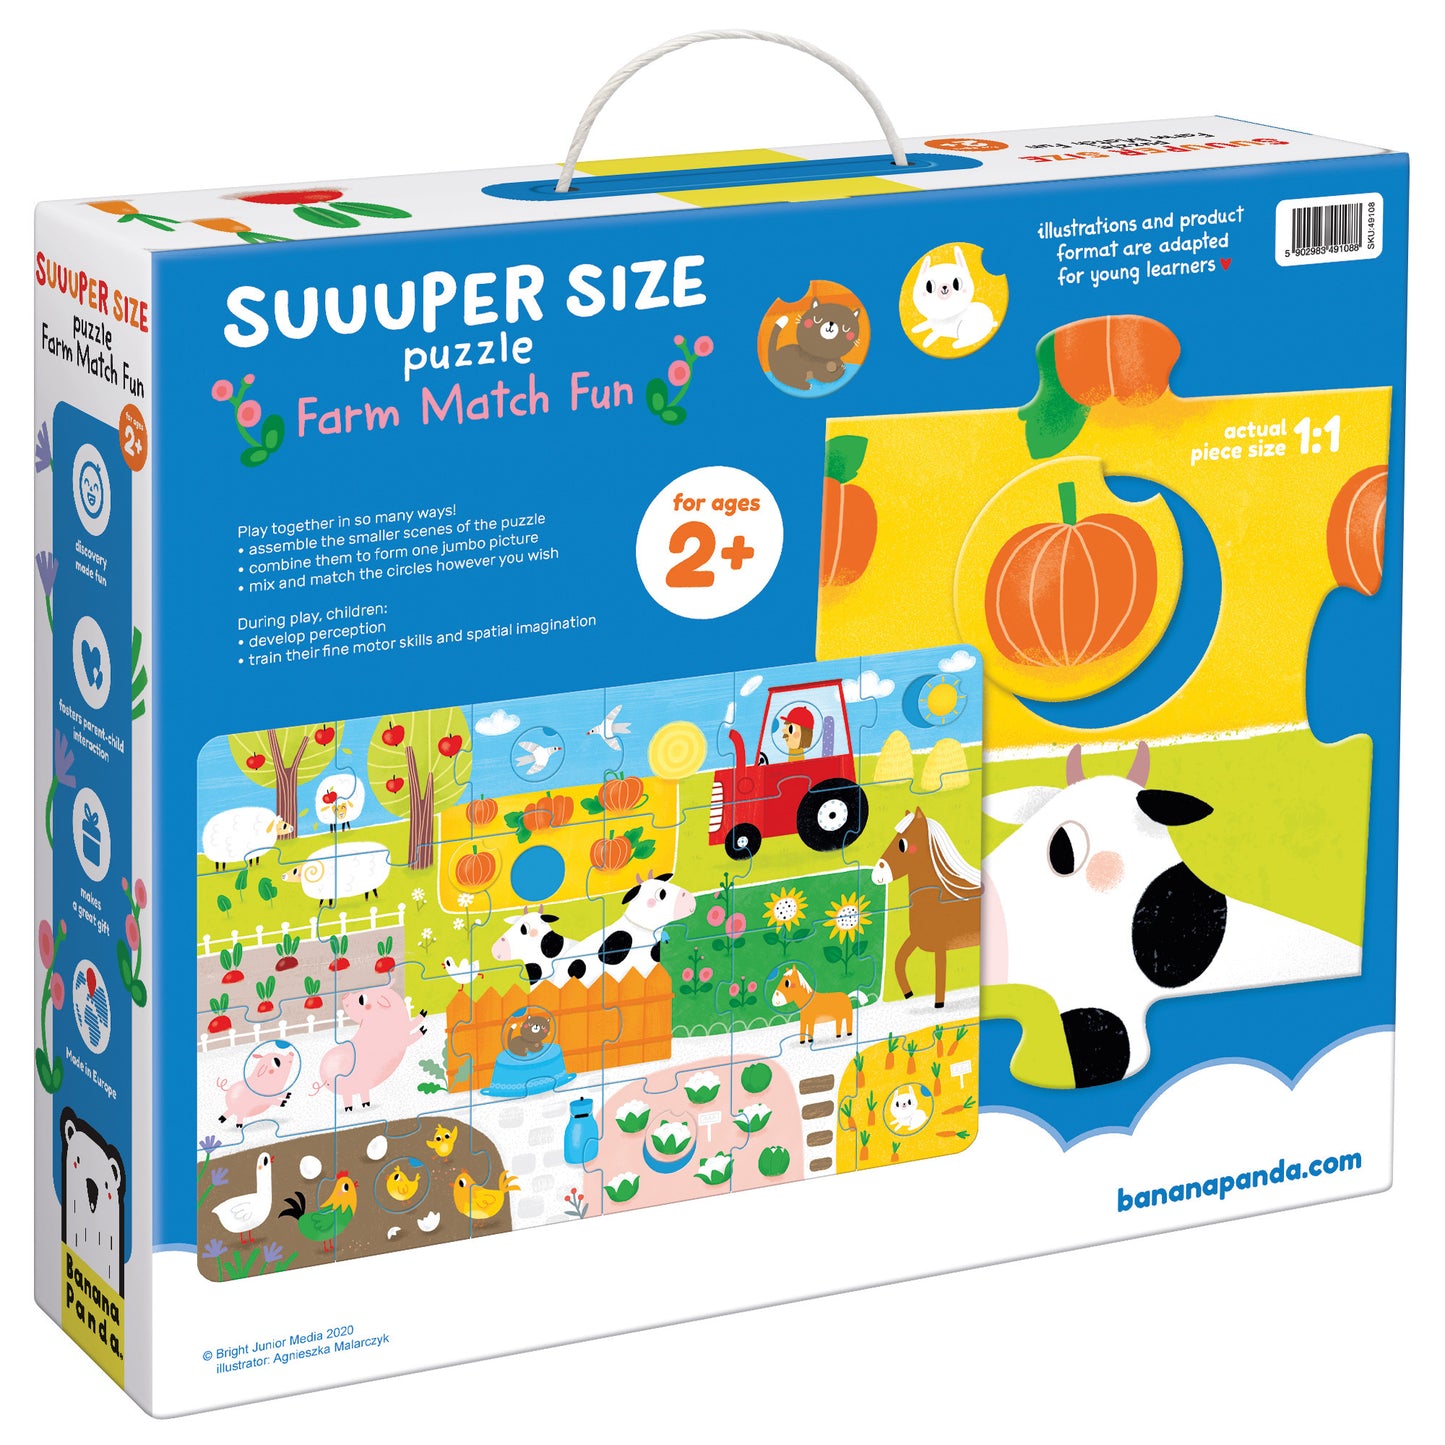 Suuuper Size Puzzle Farm Match Fun, Age 2+